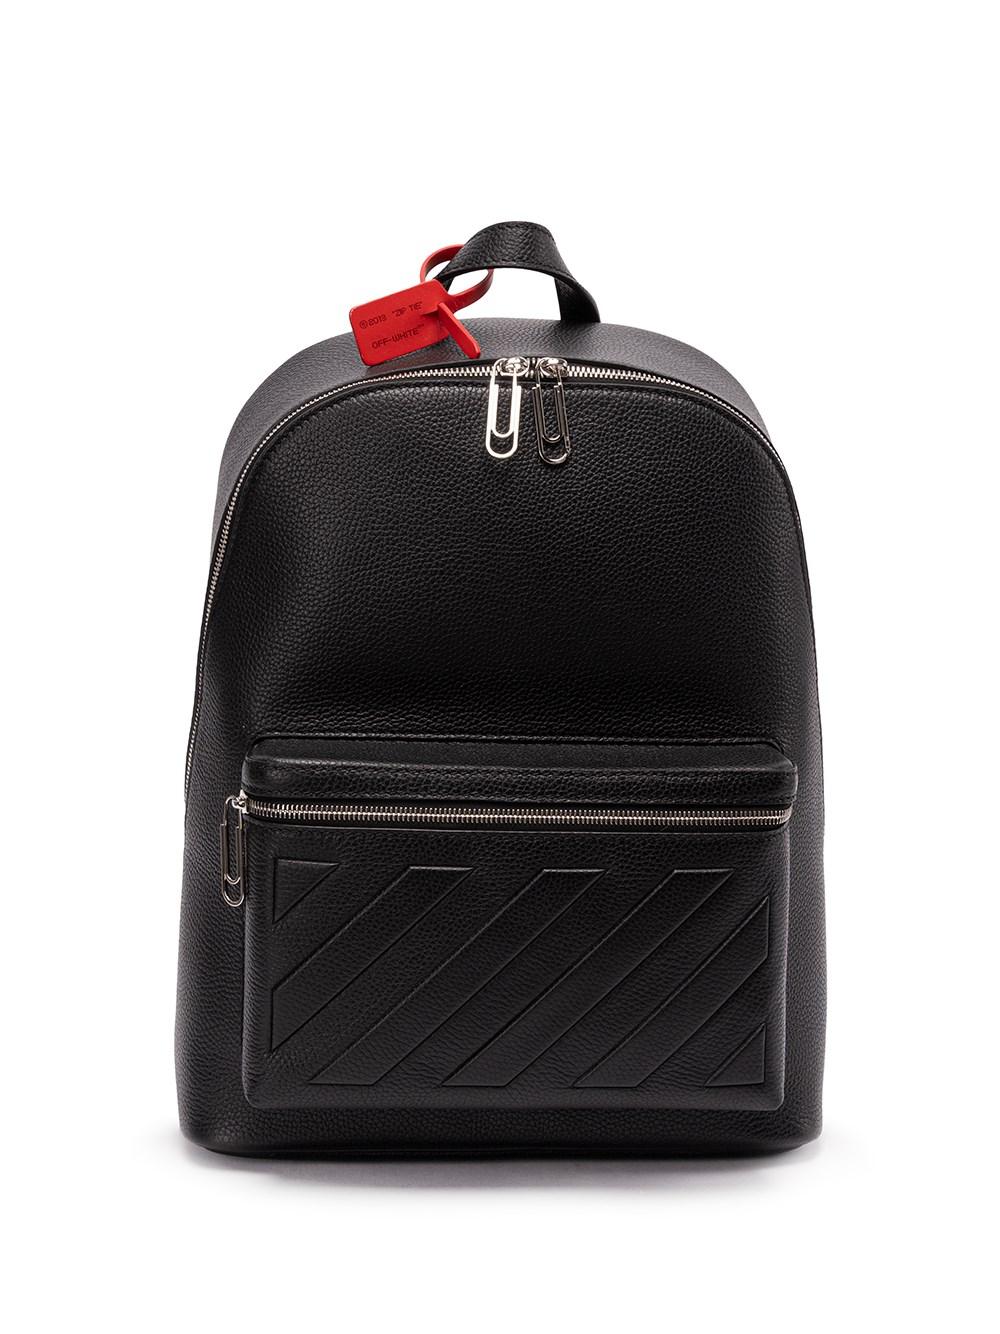 Off-White c/o Virgil Abloh Binder Backpack in Black for Men